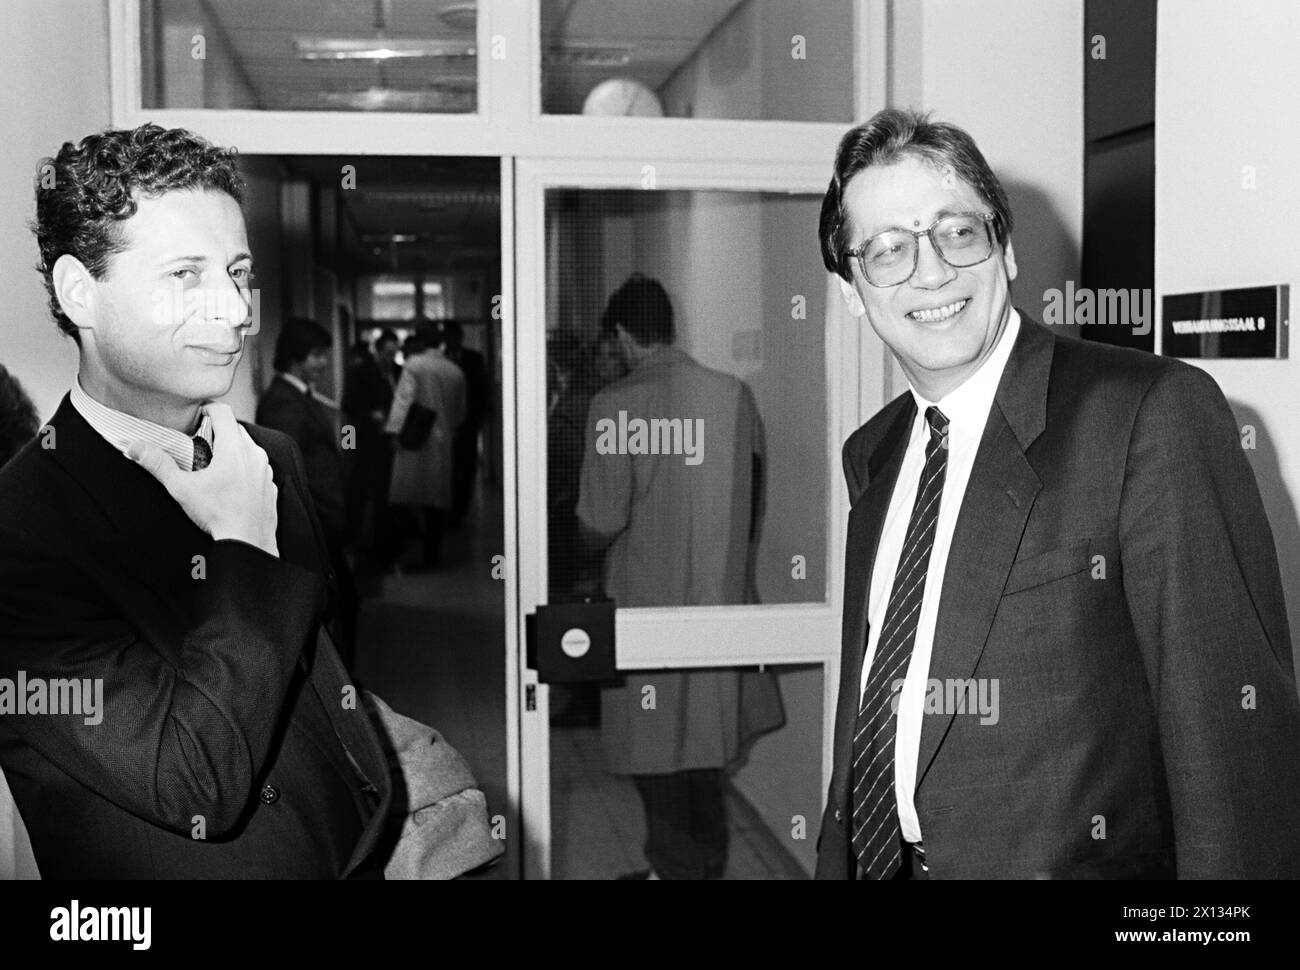 Wien am 10. Oktober 1989: Österreichs Finanzminister Ferdinand Lacina (R.) und sein Anwalt Dr. Daniel Charim vor der Noricum-Verhandlung. - 19891010 PD0007 - Rechteinfo: Rechte verwaltet (RM) Stockfoto